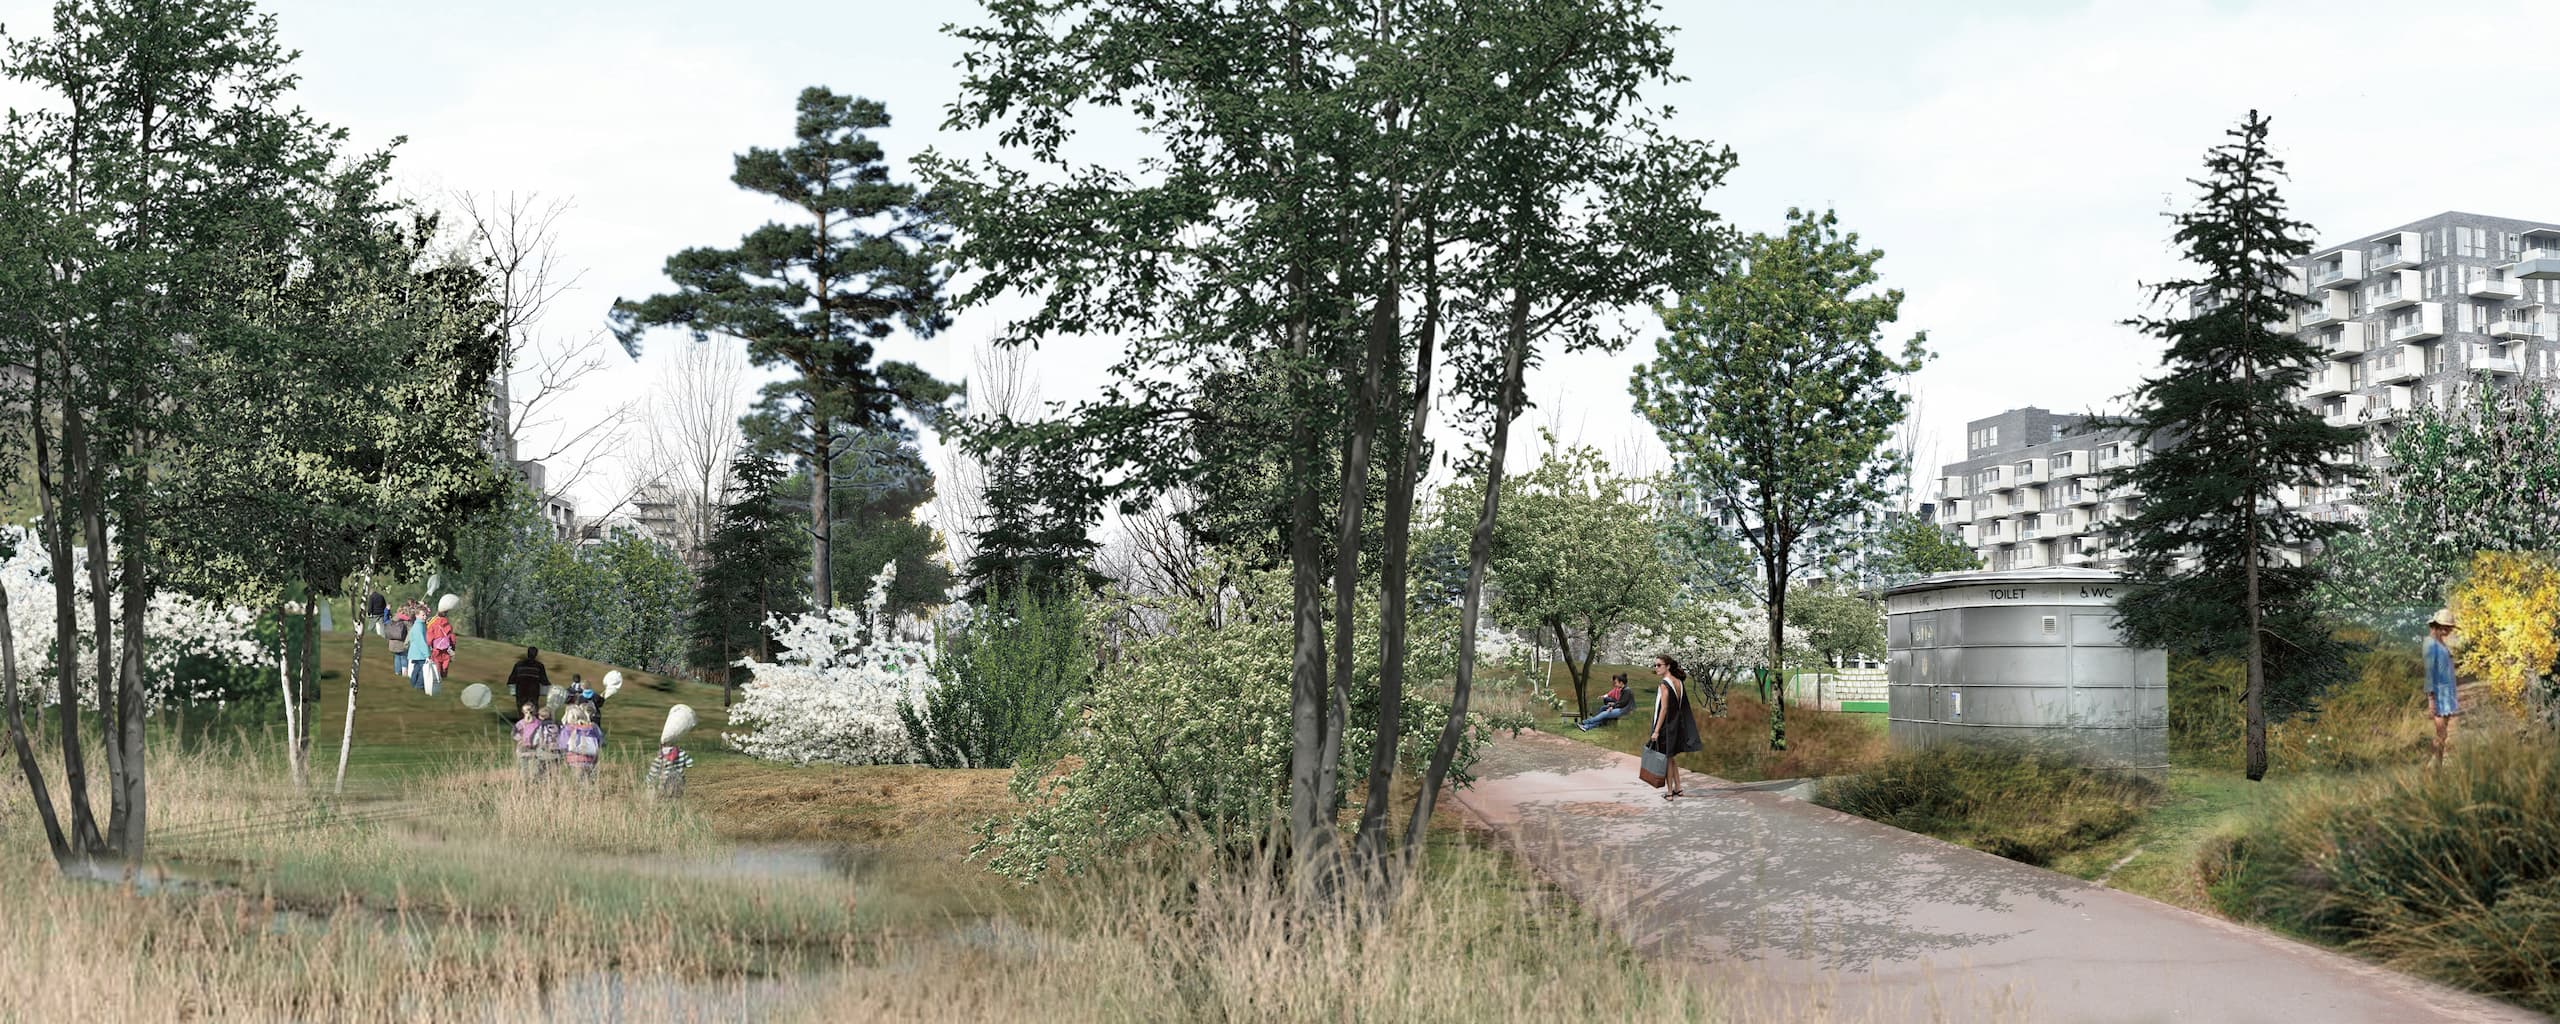 Ørestad er omgivet af vild natur, som Grundejerforeningen Ørestad City forsøger at trække ind i bydelen. Byparken er et vigtigt element og et grønt knudepunkt, hvor man skal kunne mærke summen af liv højt og lavt som vidt og bredt. Den vision kommer grundejerforeningen i 2024 tættere på at realisere, når Byparken bliver udvidet med endnu et dejligt område. Noget af området er her visualiseret af SLA.